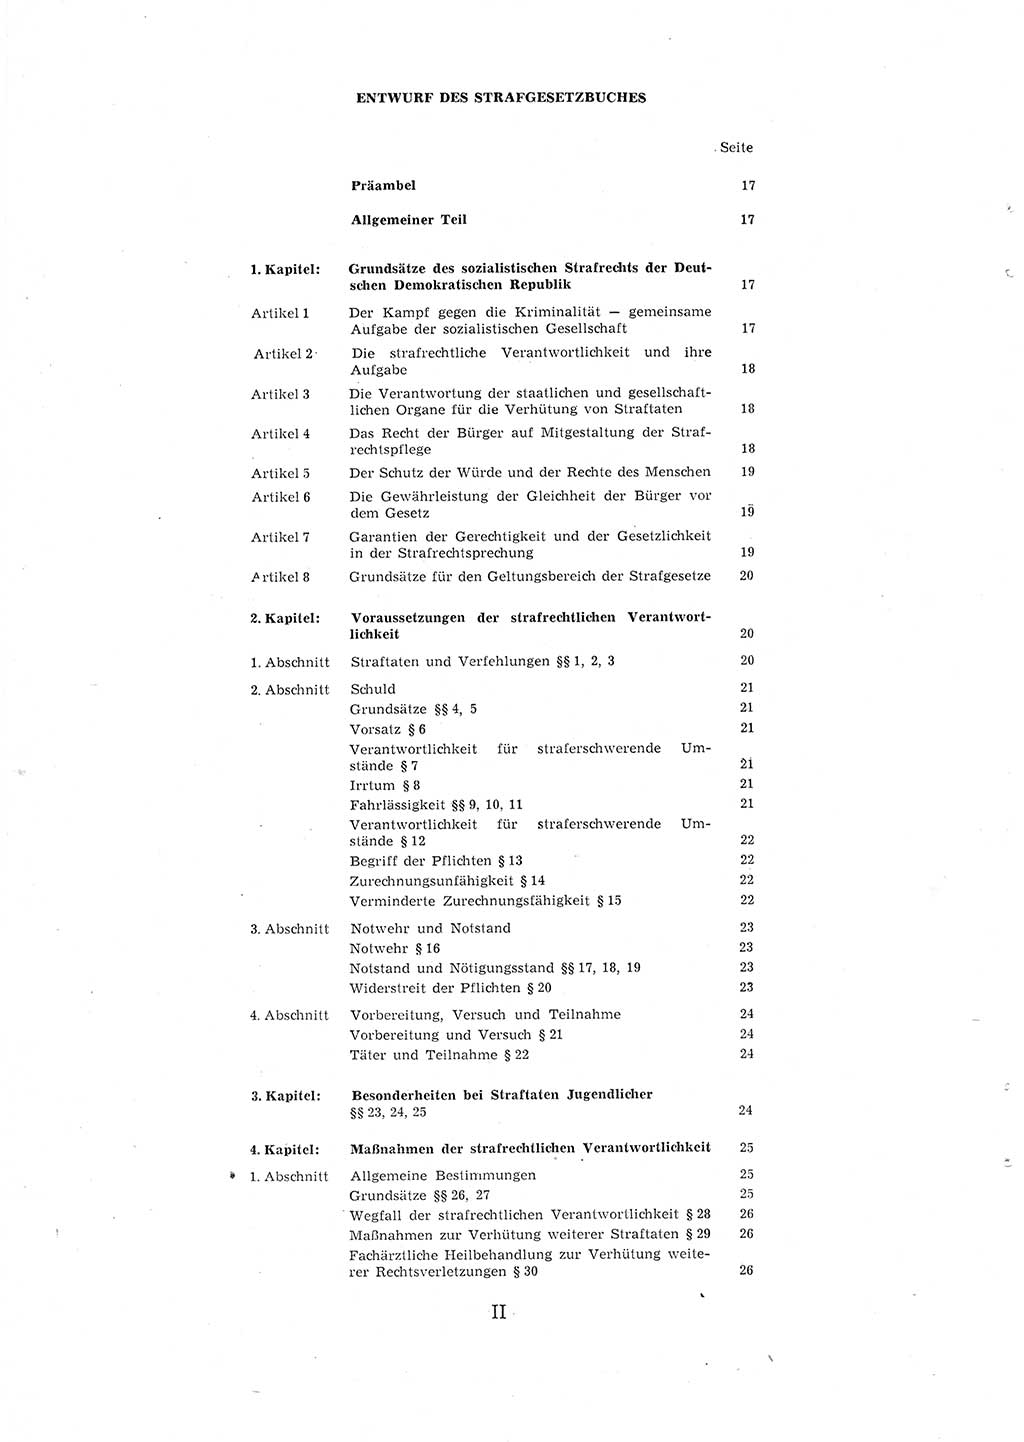 Entwurf des Strafgesetzbuches (StGB) der Deutschen Demokratischen Republik (DDR) 1967, Seite 78 (Entw. StGB DDR 1967, S. 78)